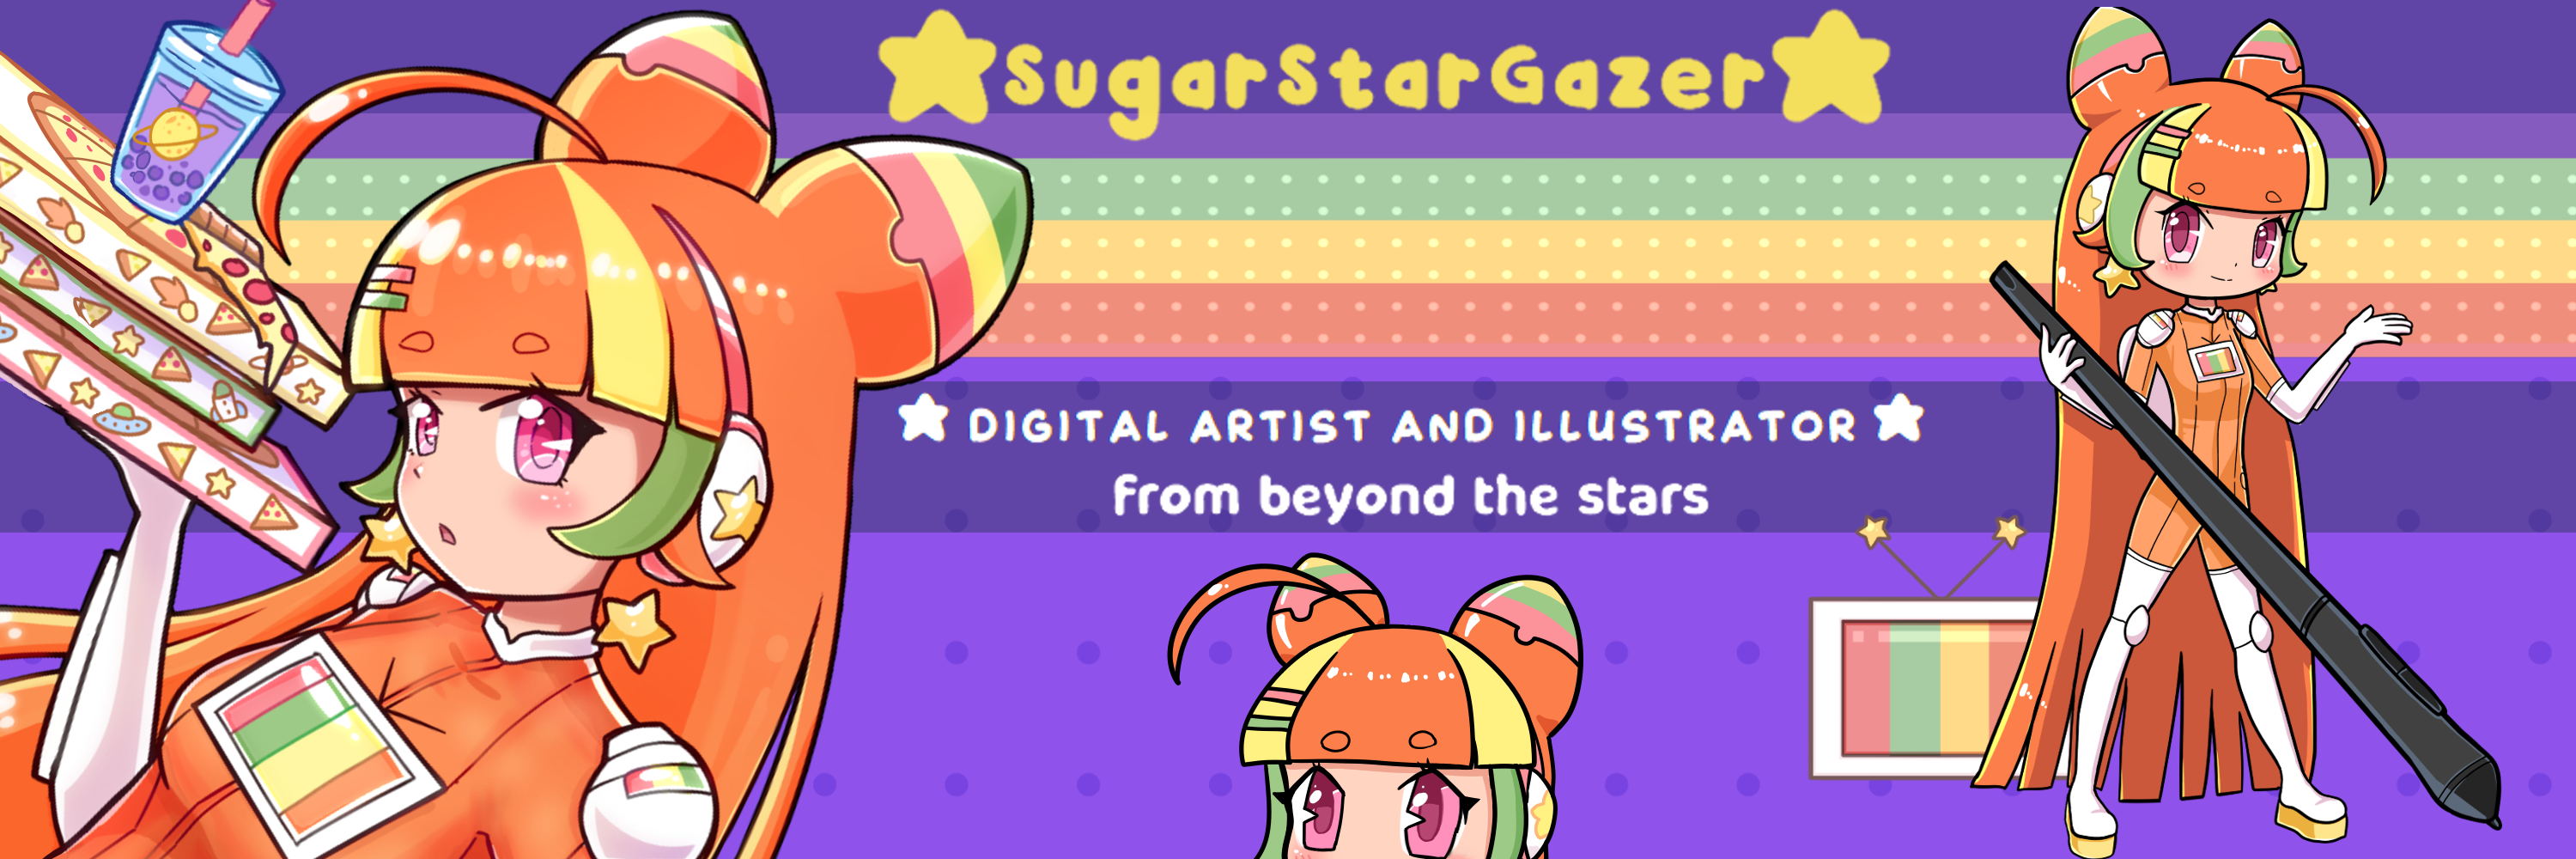 SugarStarGazer